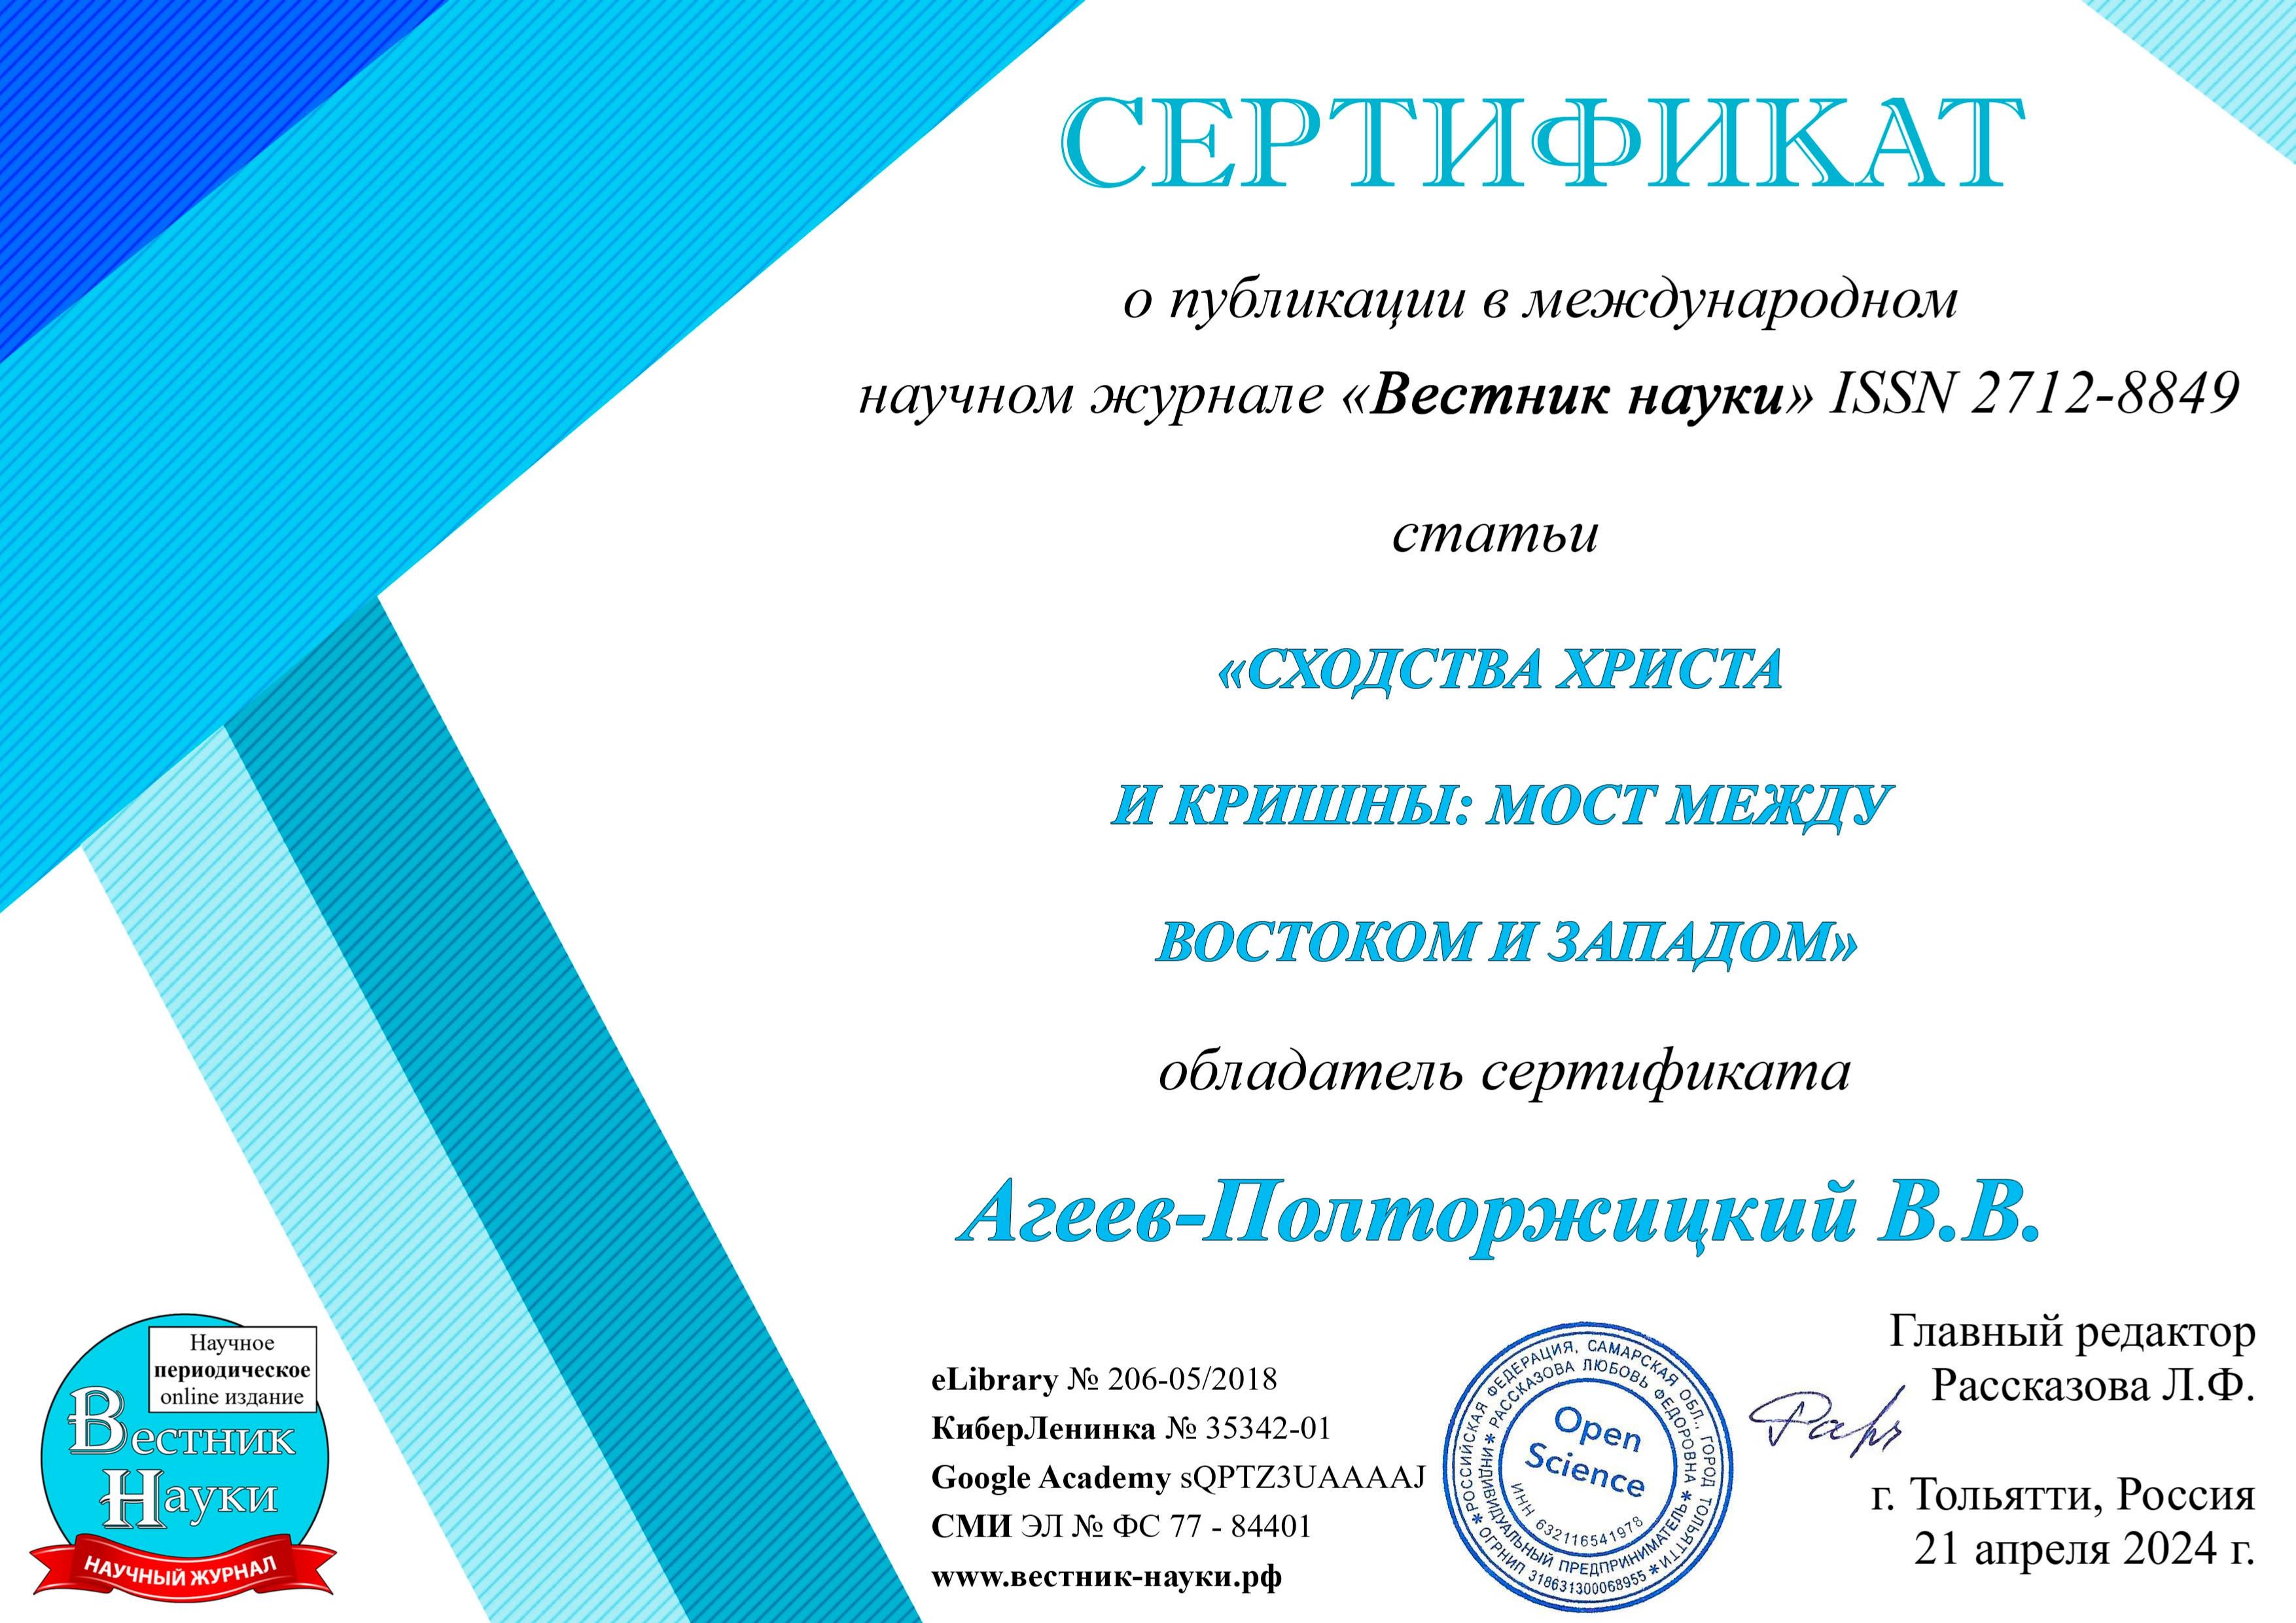 Сертификат о публикации в международном научном журнале Виктор Агеев-Полторжицкий